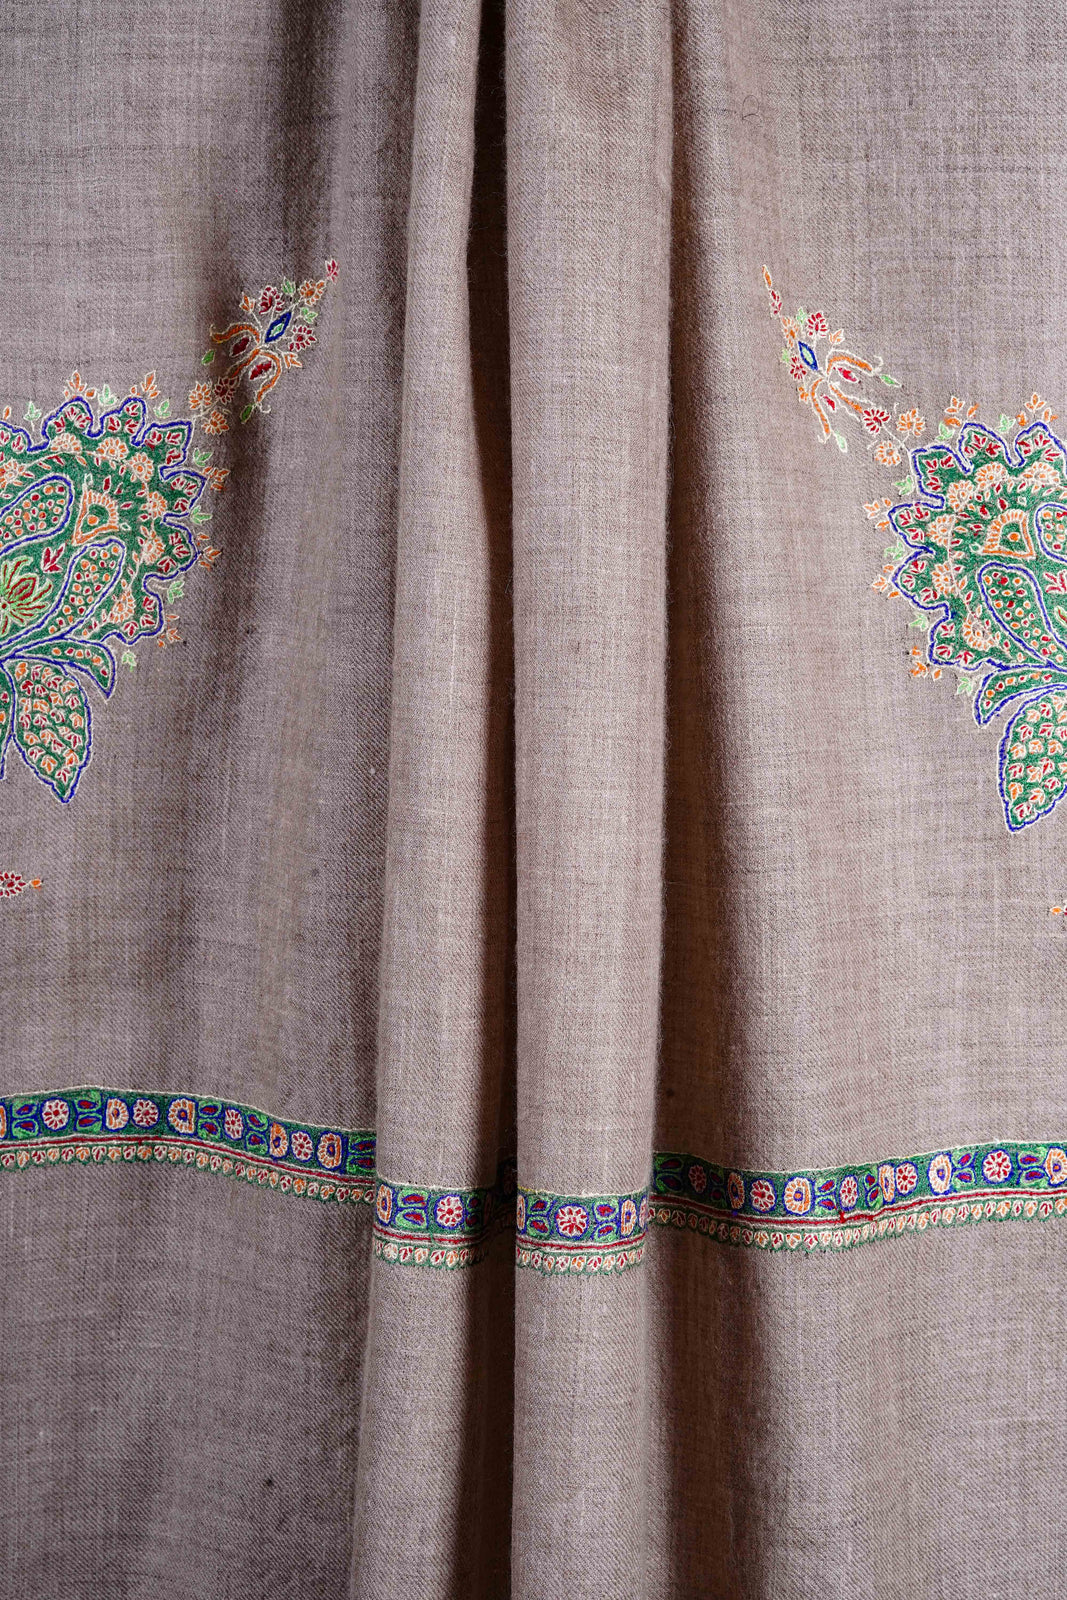 Natural base Cone Motif  Sozni Hand Embroidery Pashmina Shawl